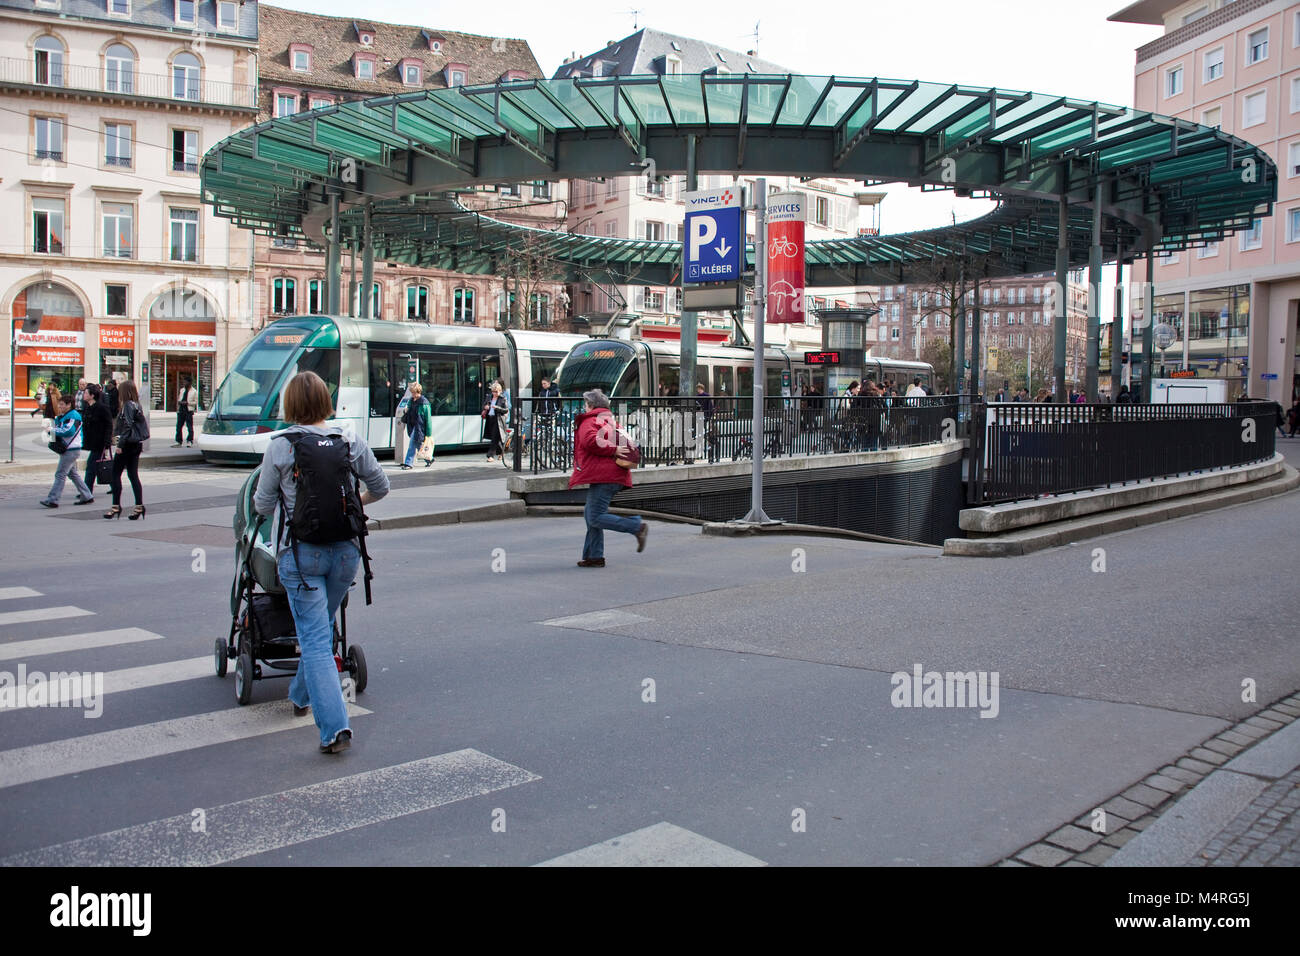 Paysage urbain, les gens à l'arrêt "Homme de Fer", place Kléber, Strasbourg, Alsace, Bas-Rhin, France, Europe Banque D'Images